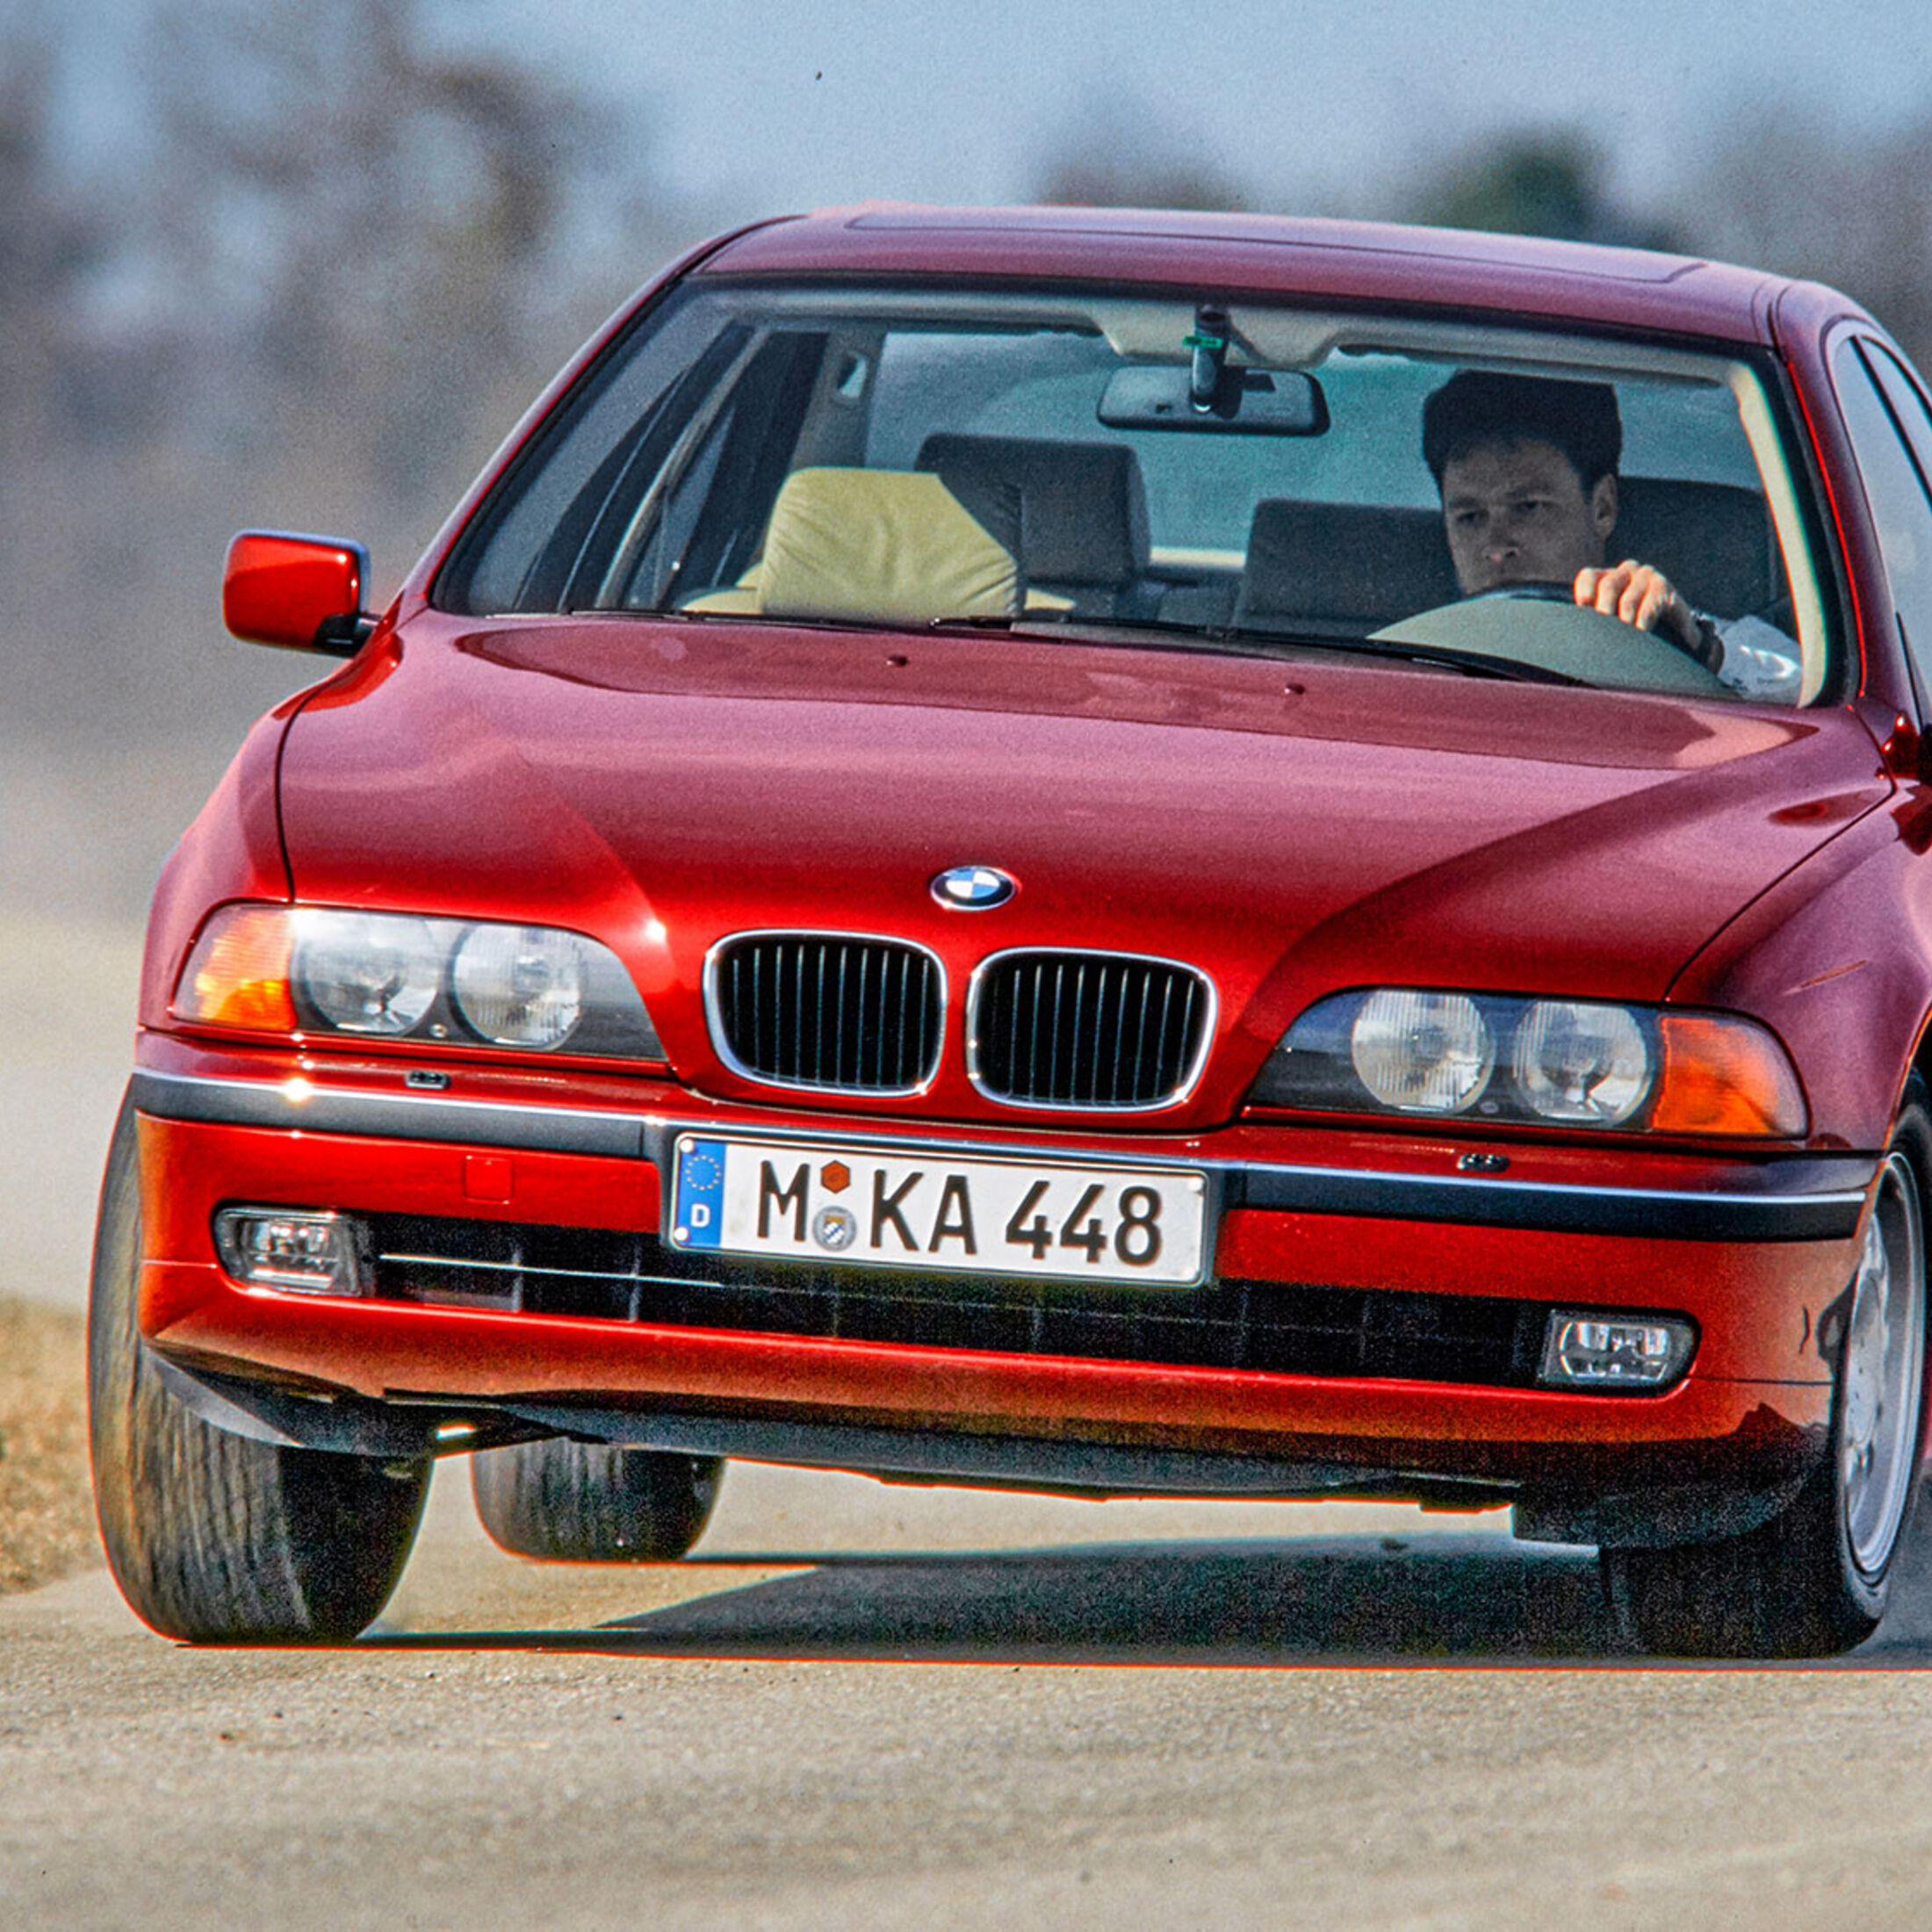 Zubehör für BMW E39 günstig bestellen